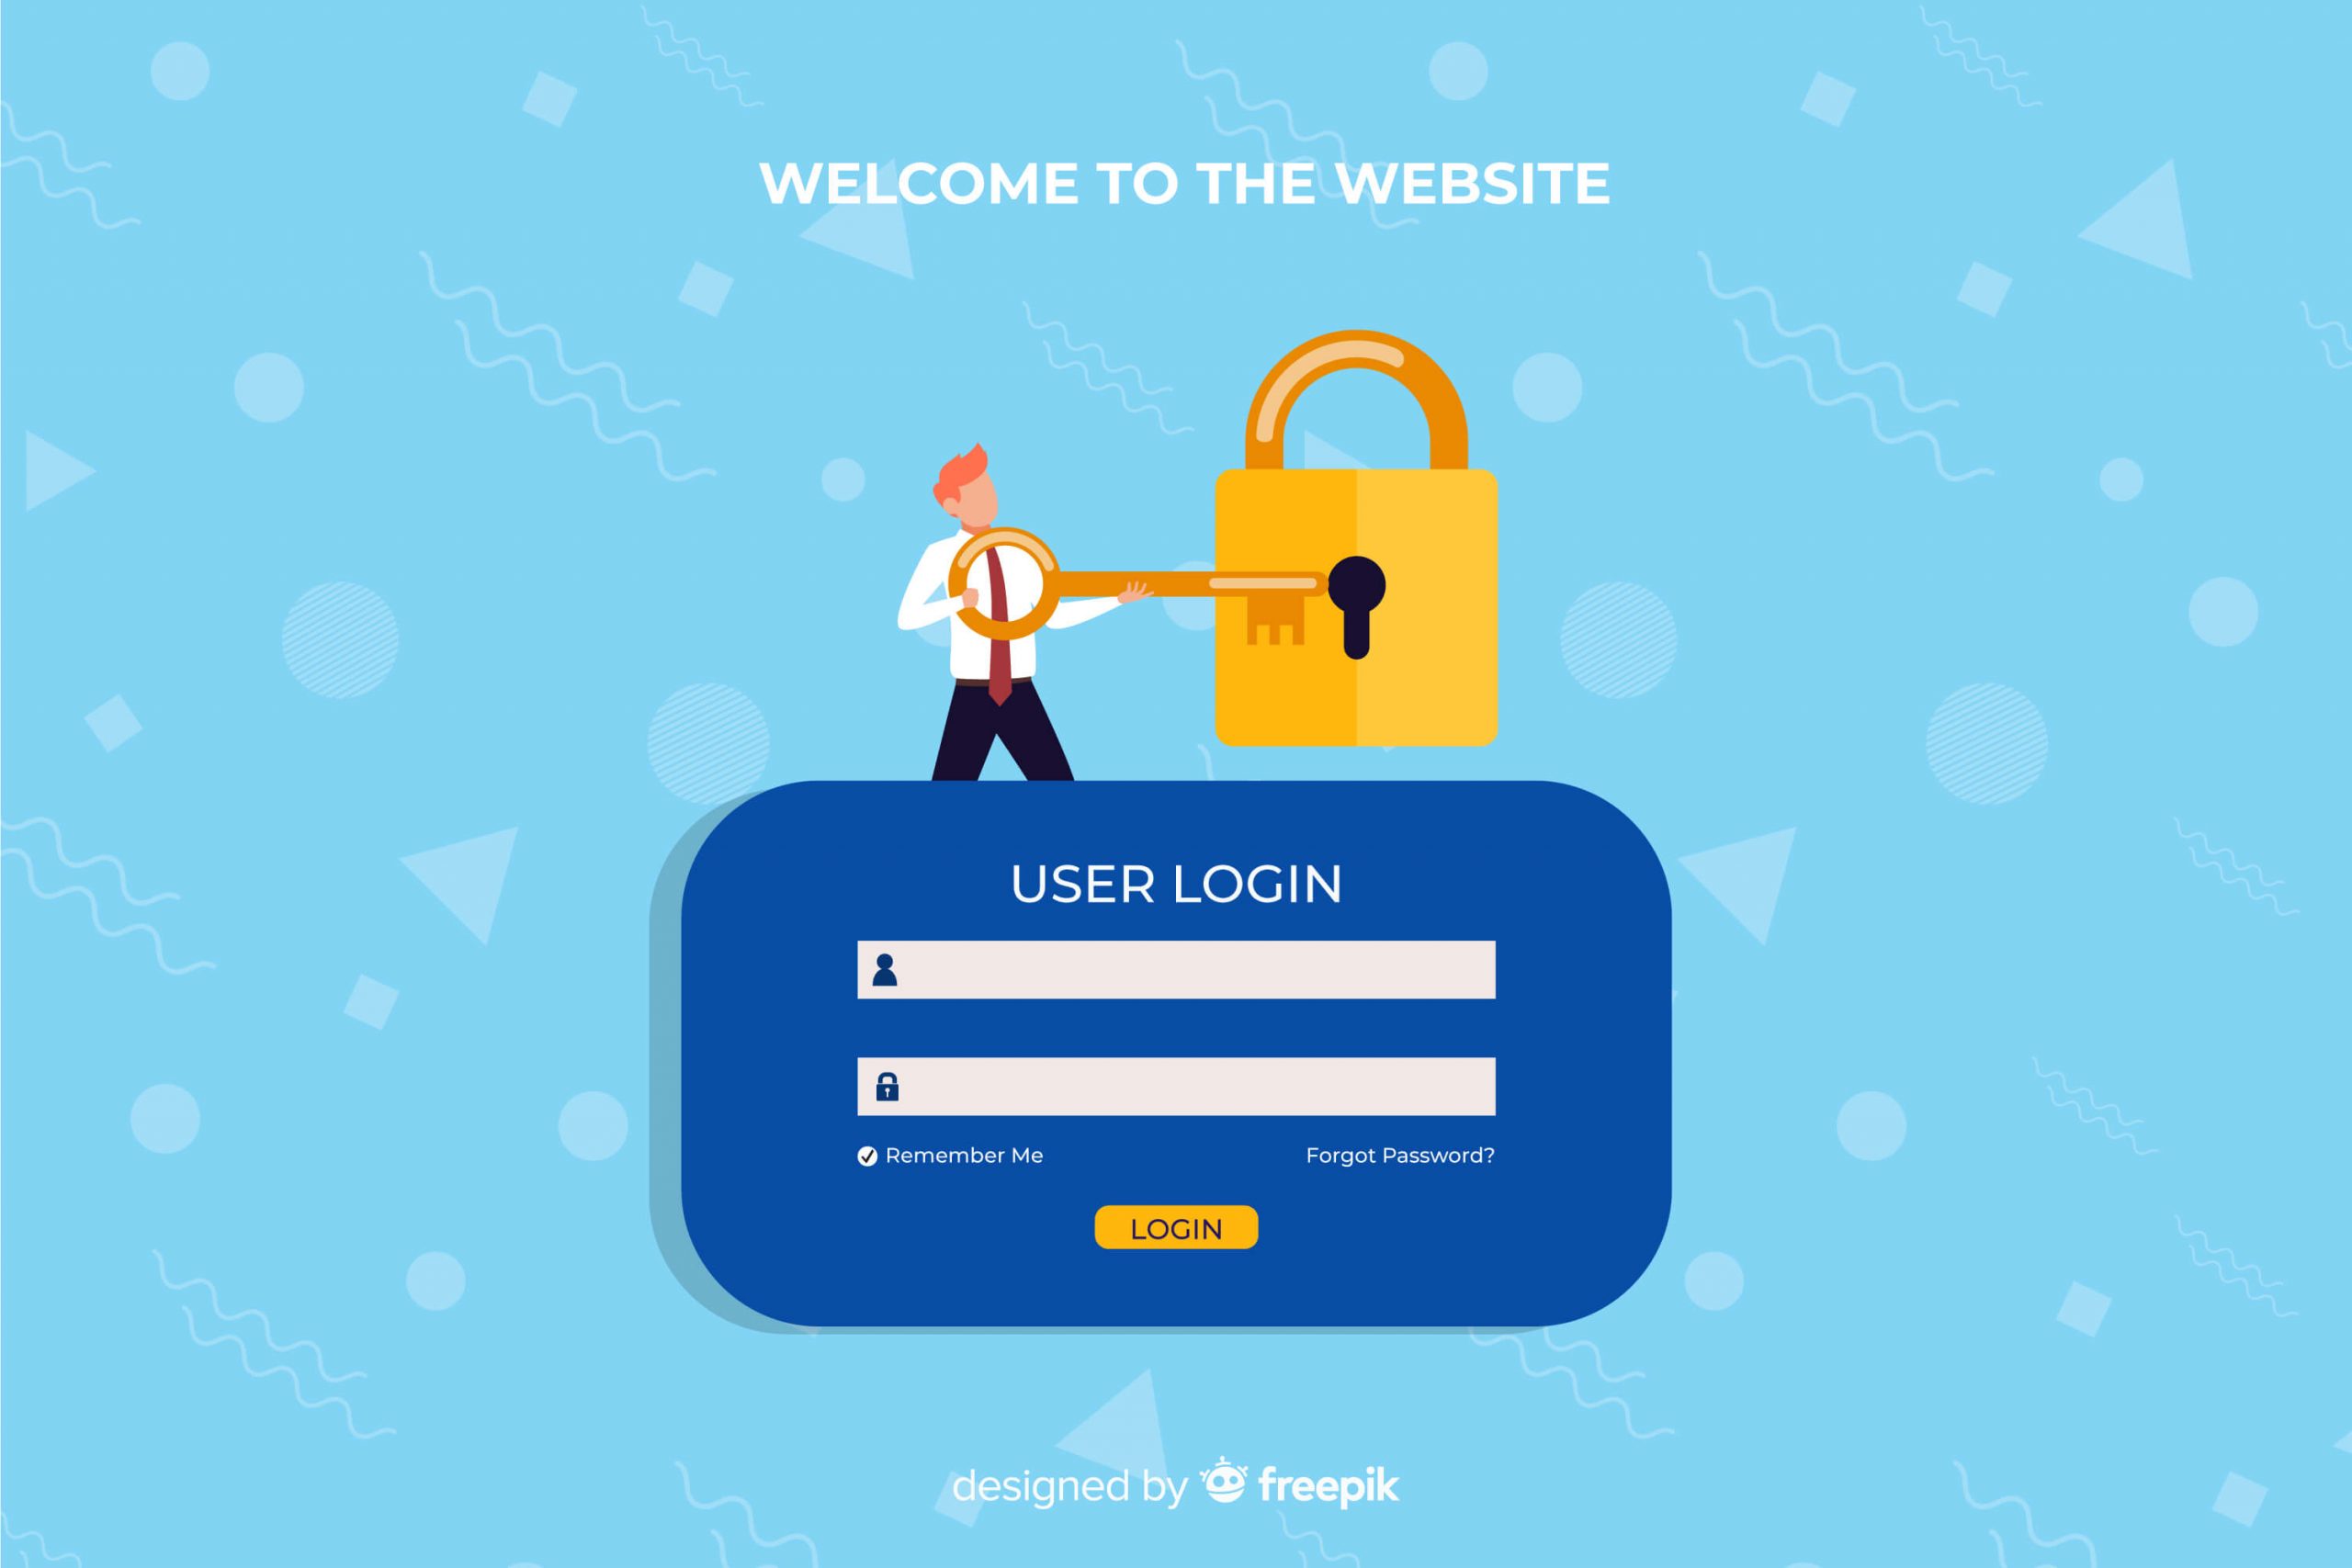 Make your WordPress site's login procedures secure